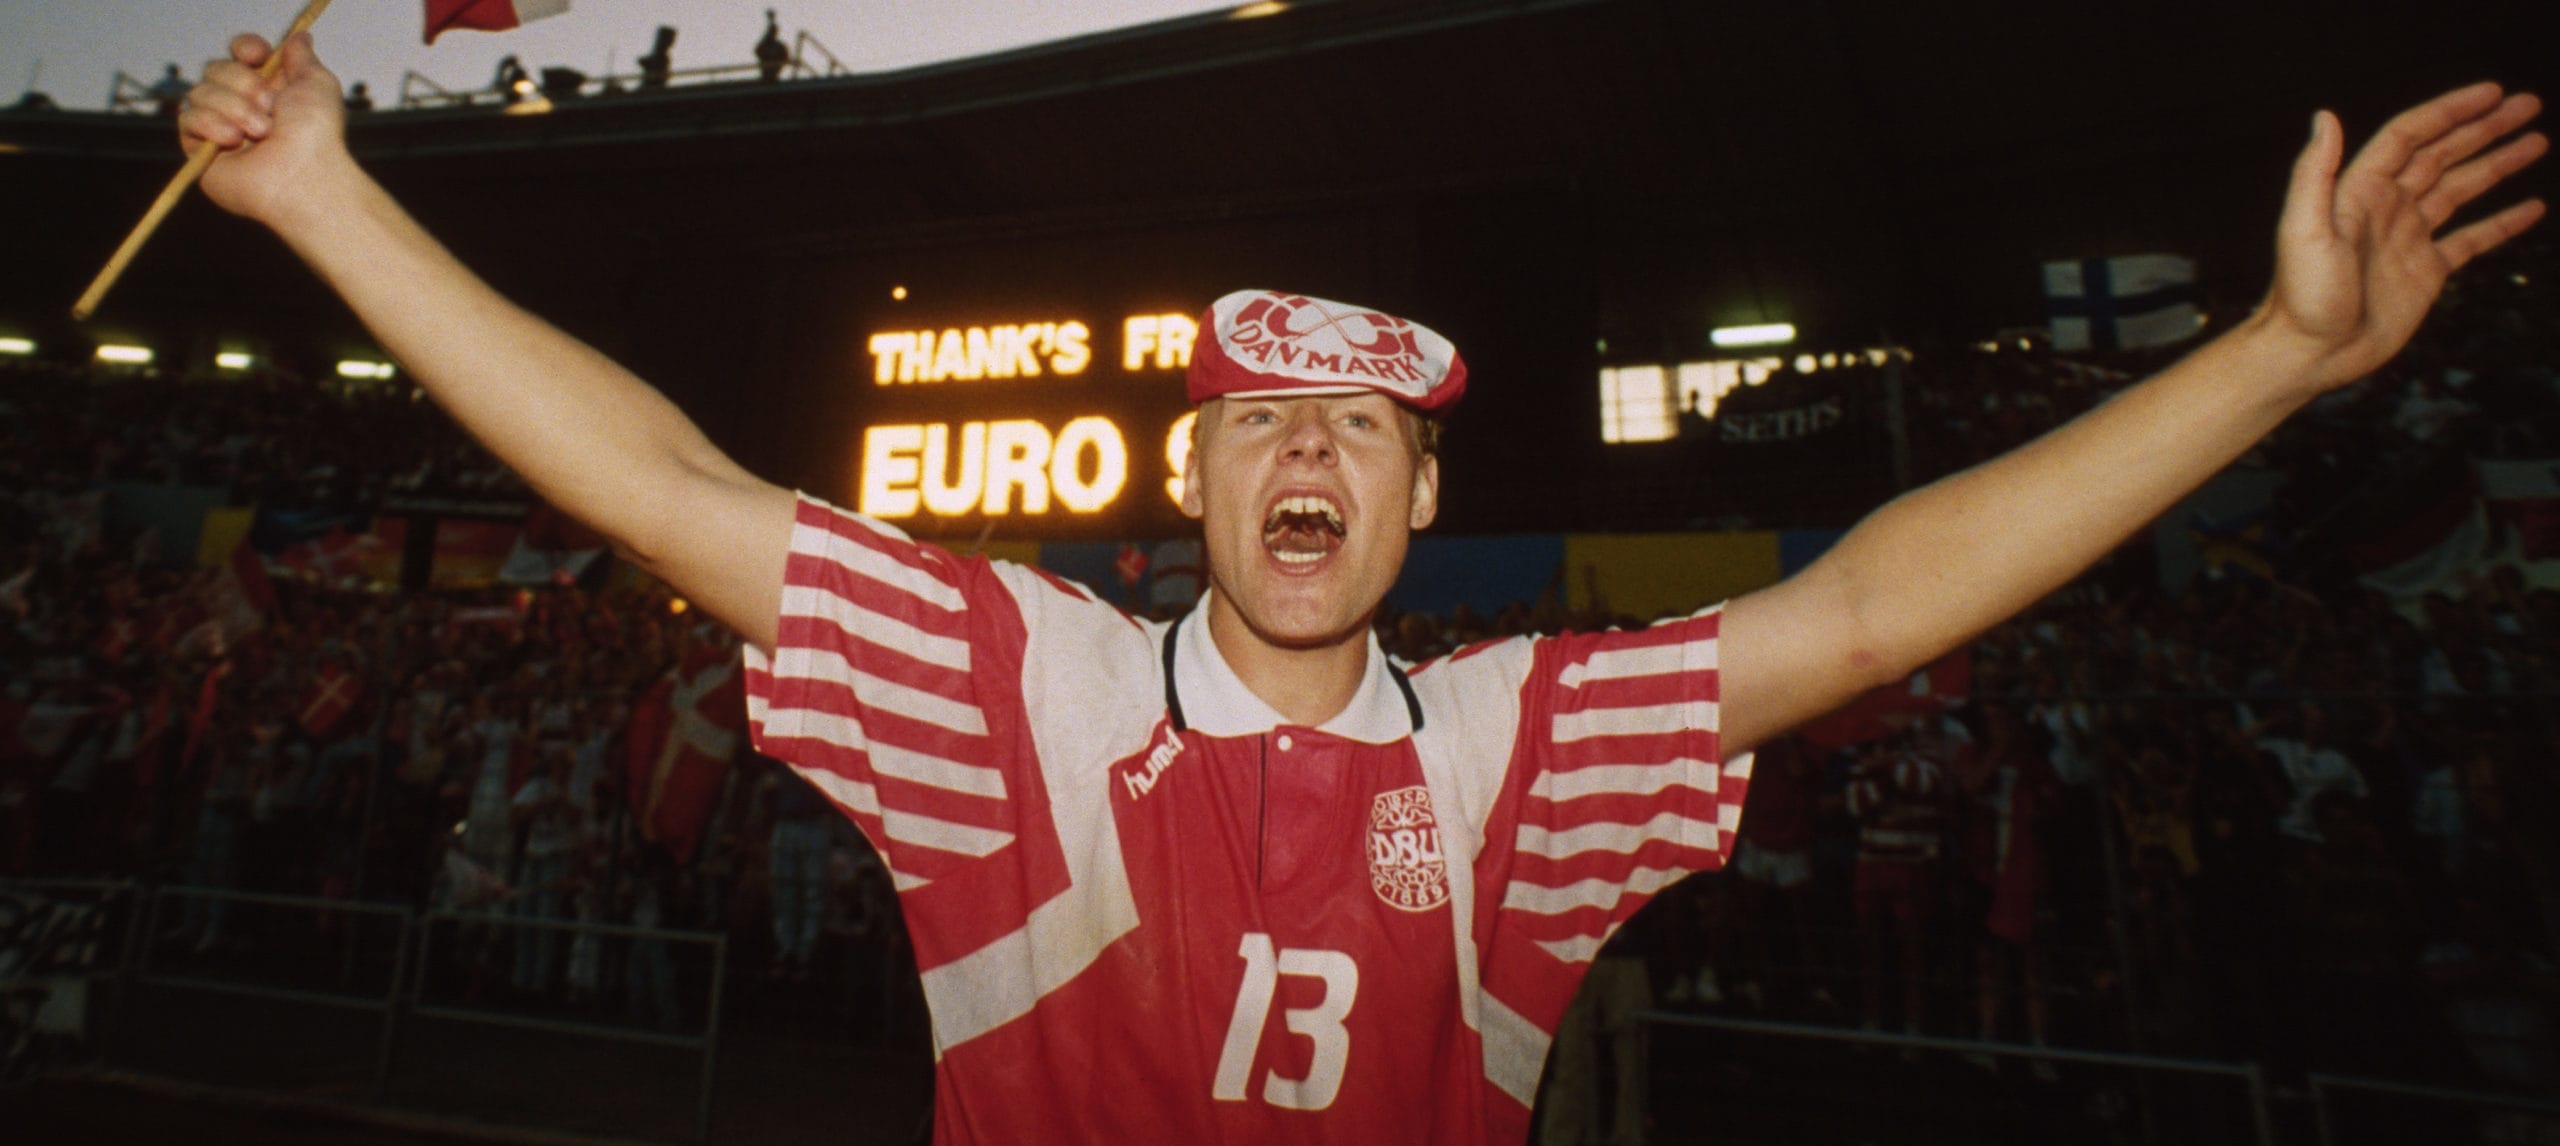 La Danimarca e il trionfo a Euro 1992, quando la favola sportiva si intreccia con la Storia